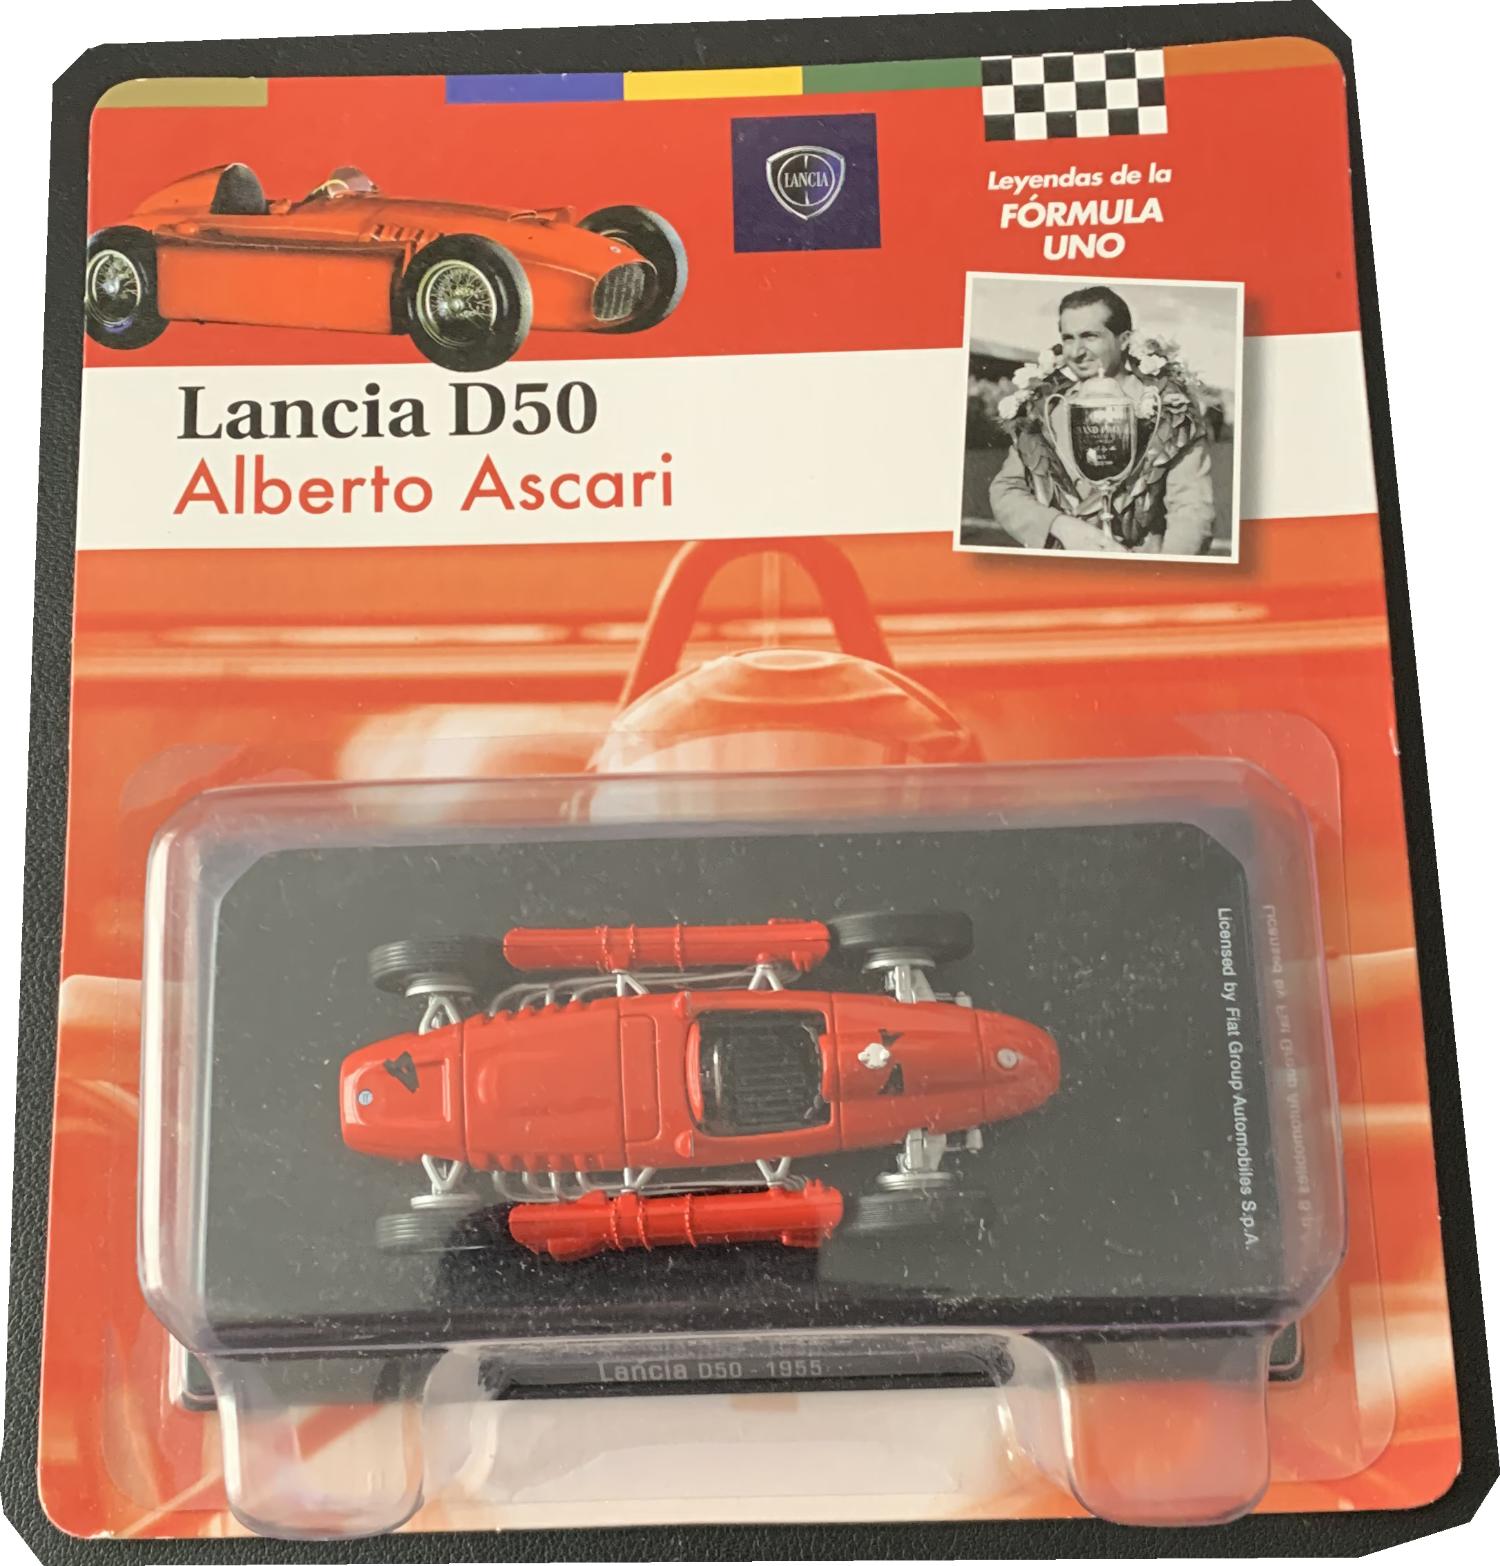 F1 Car Lancia D50 1955, Alberto Ascari 1:43 scale model